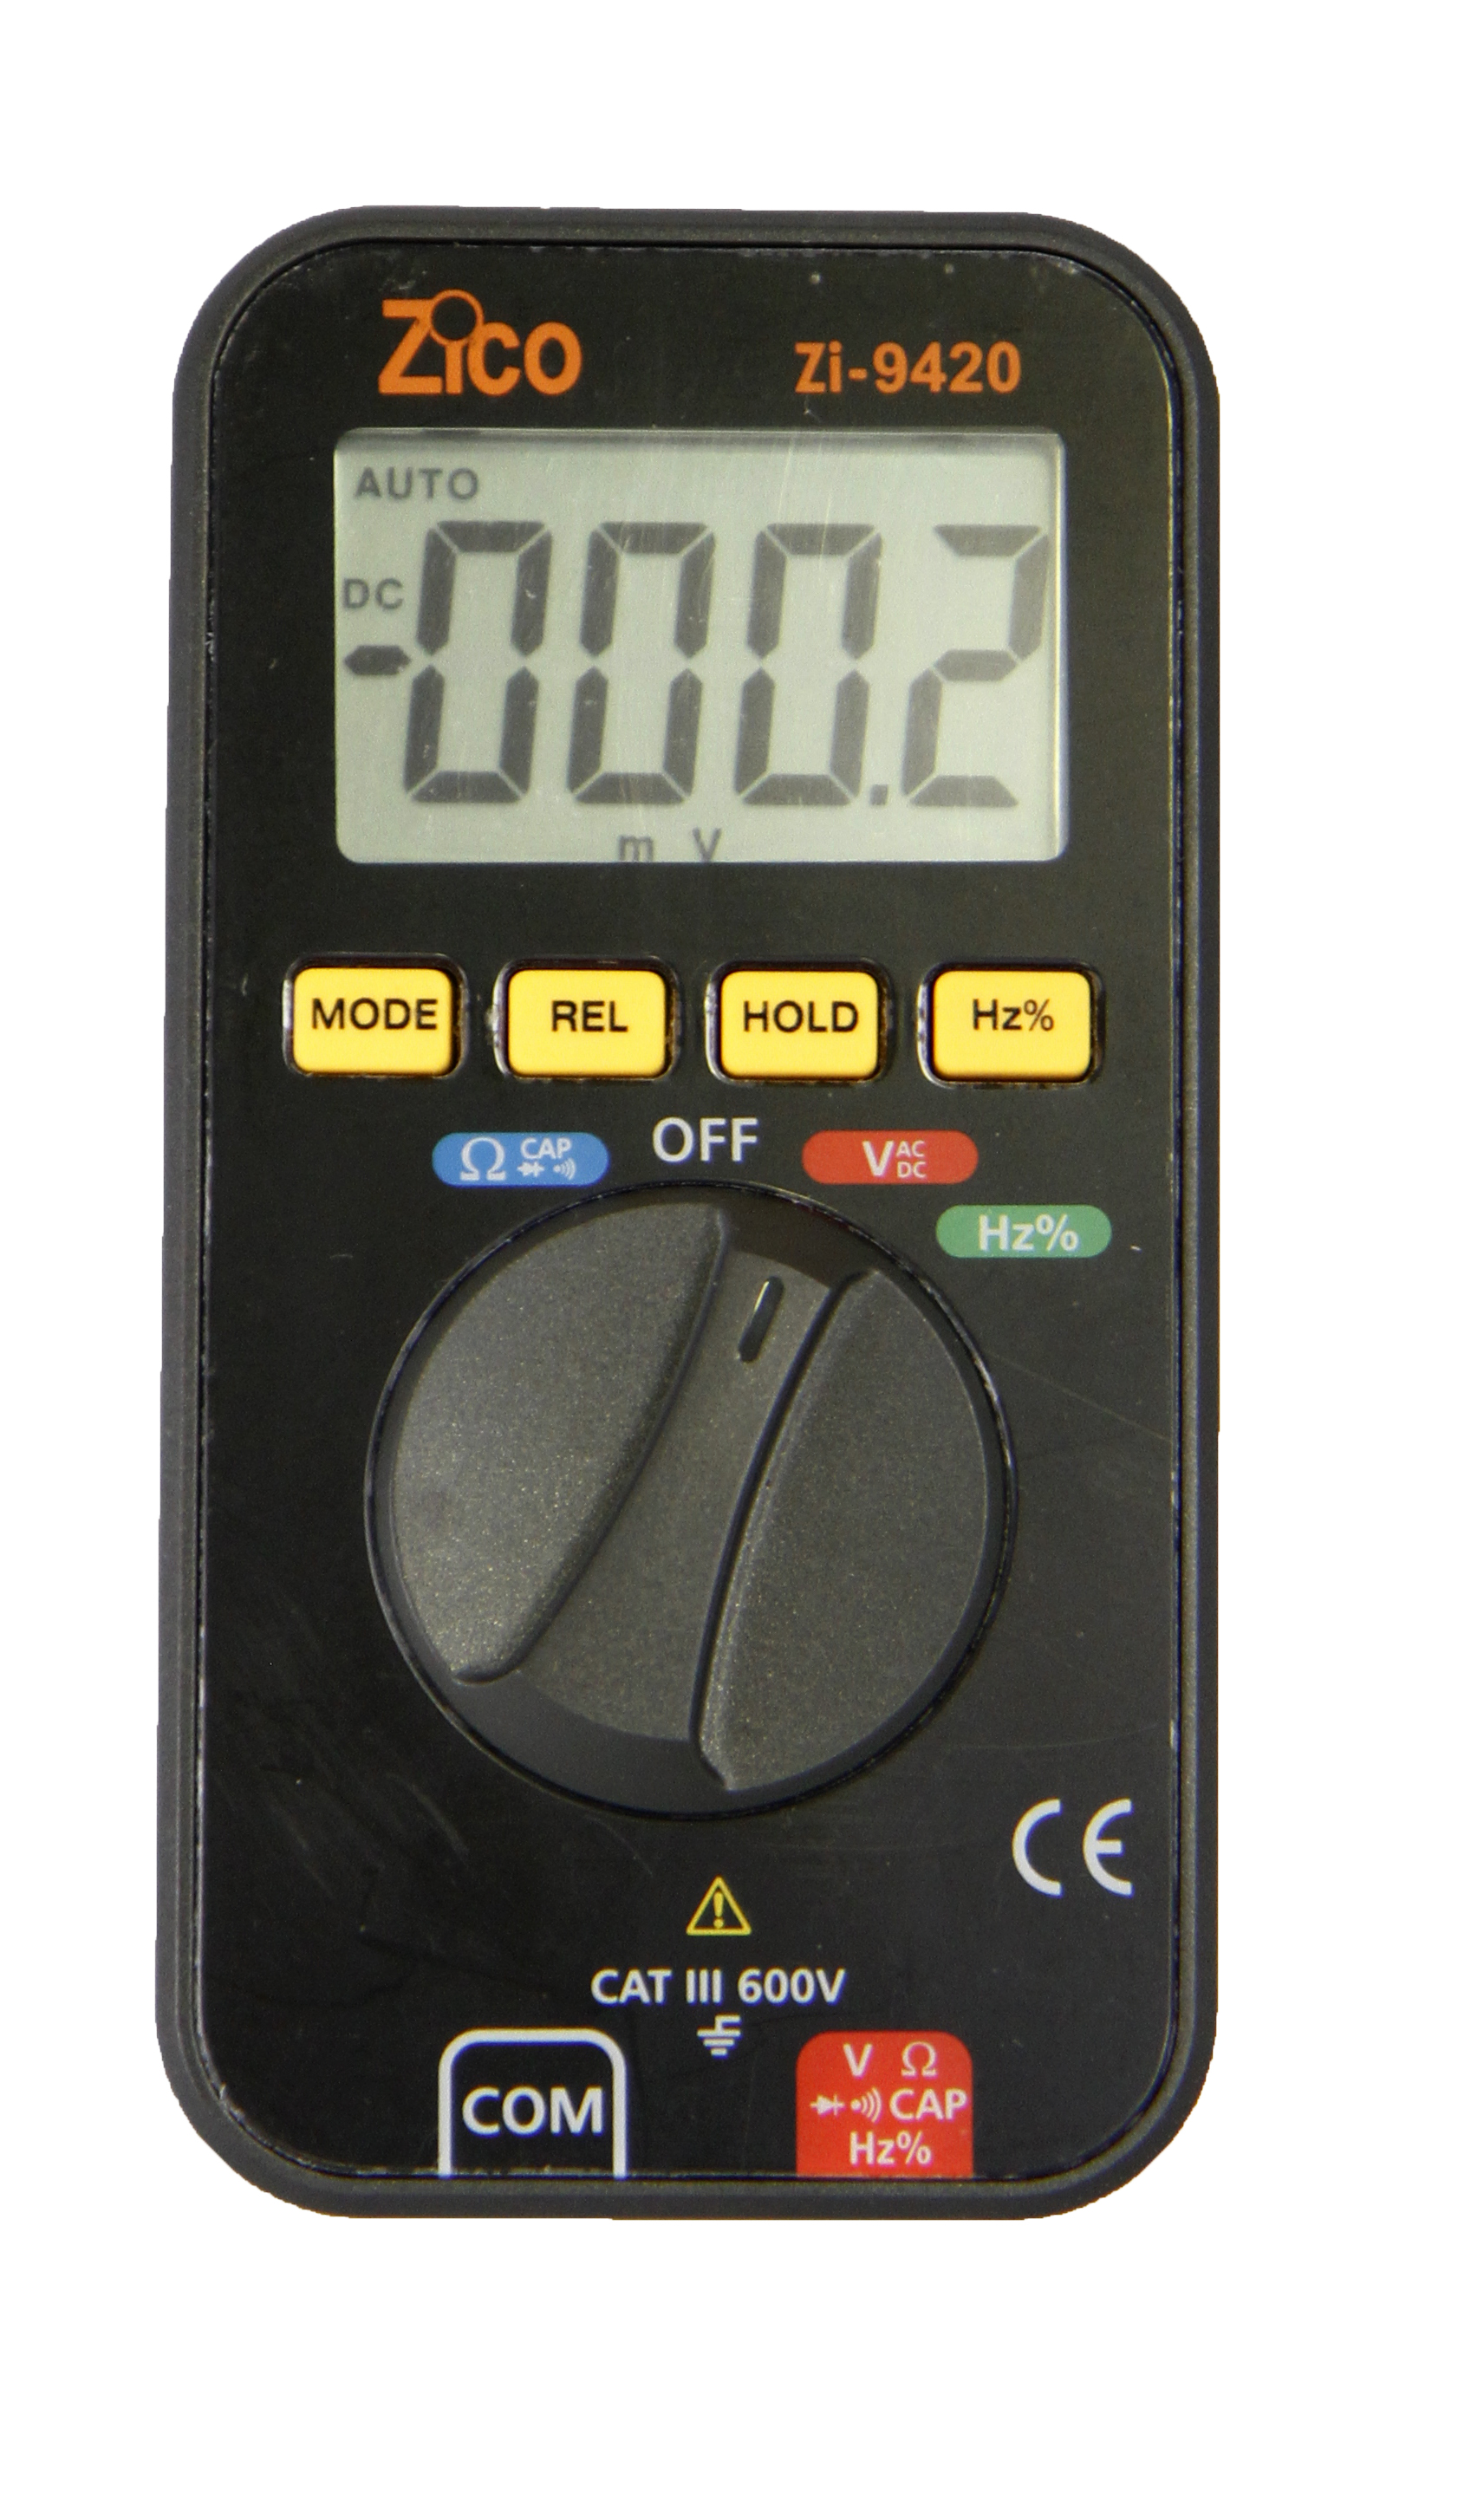 ZI-9420 Professional Pocket meter